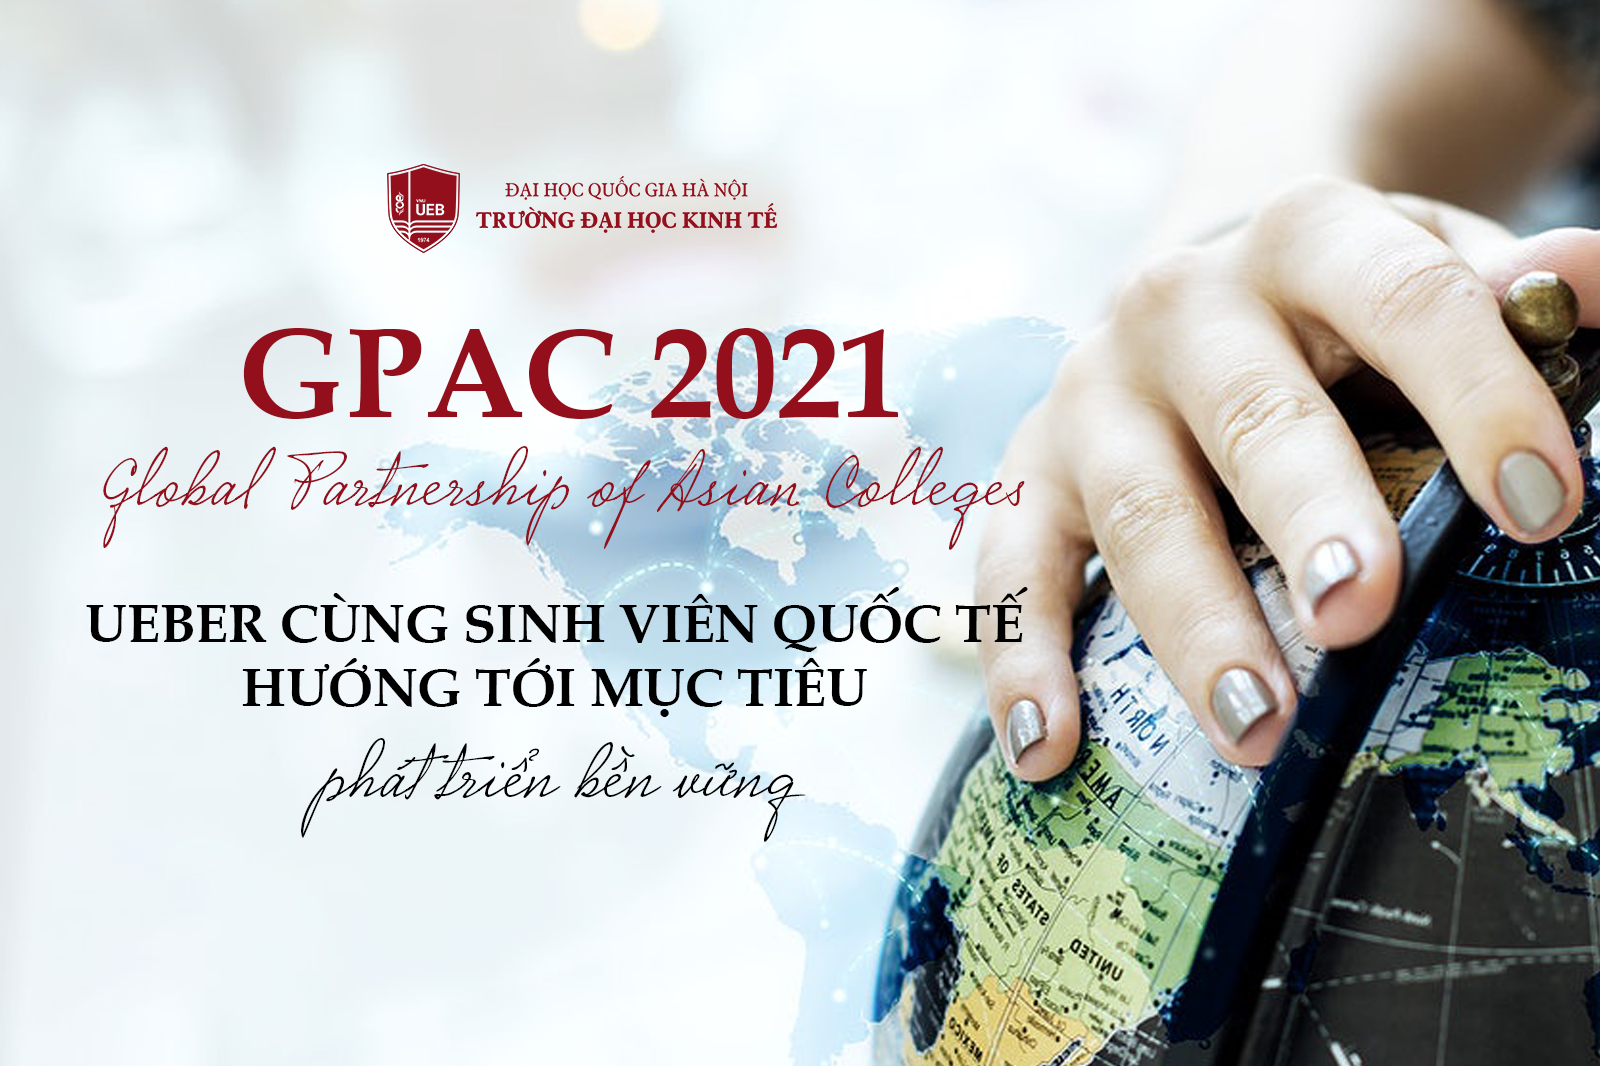 Diễn đàn sinh viên Châu Á (GPAC) 2021: UEBer cùng sinh viên quốc tế hướng tới mục tiêu phát triển bền vững